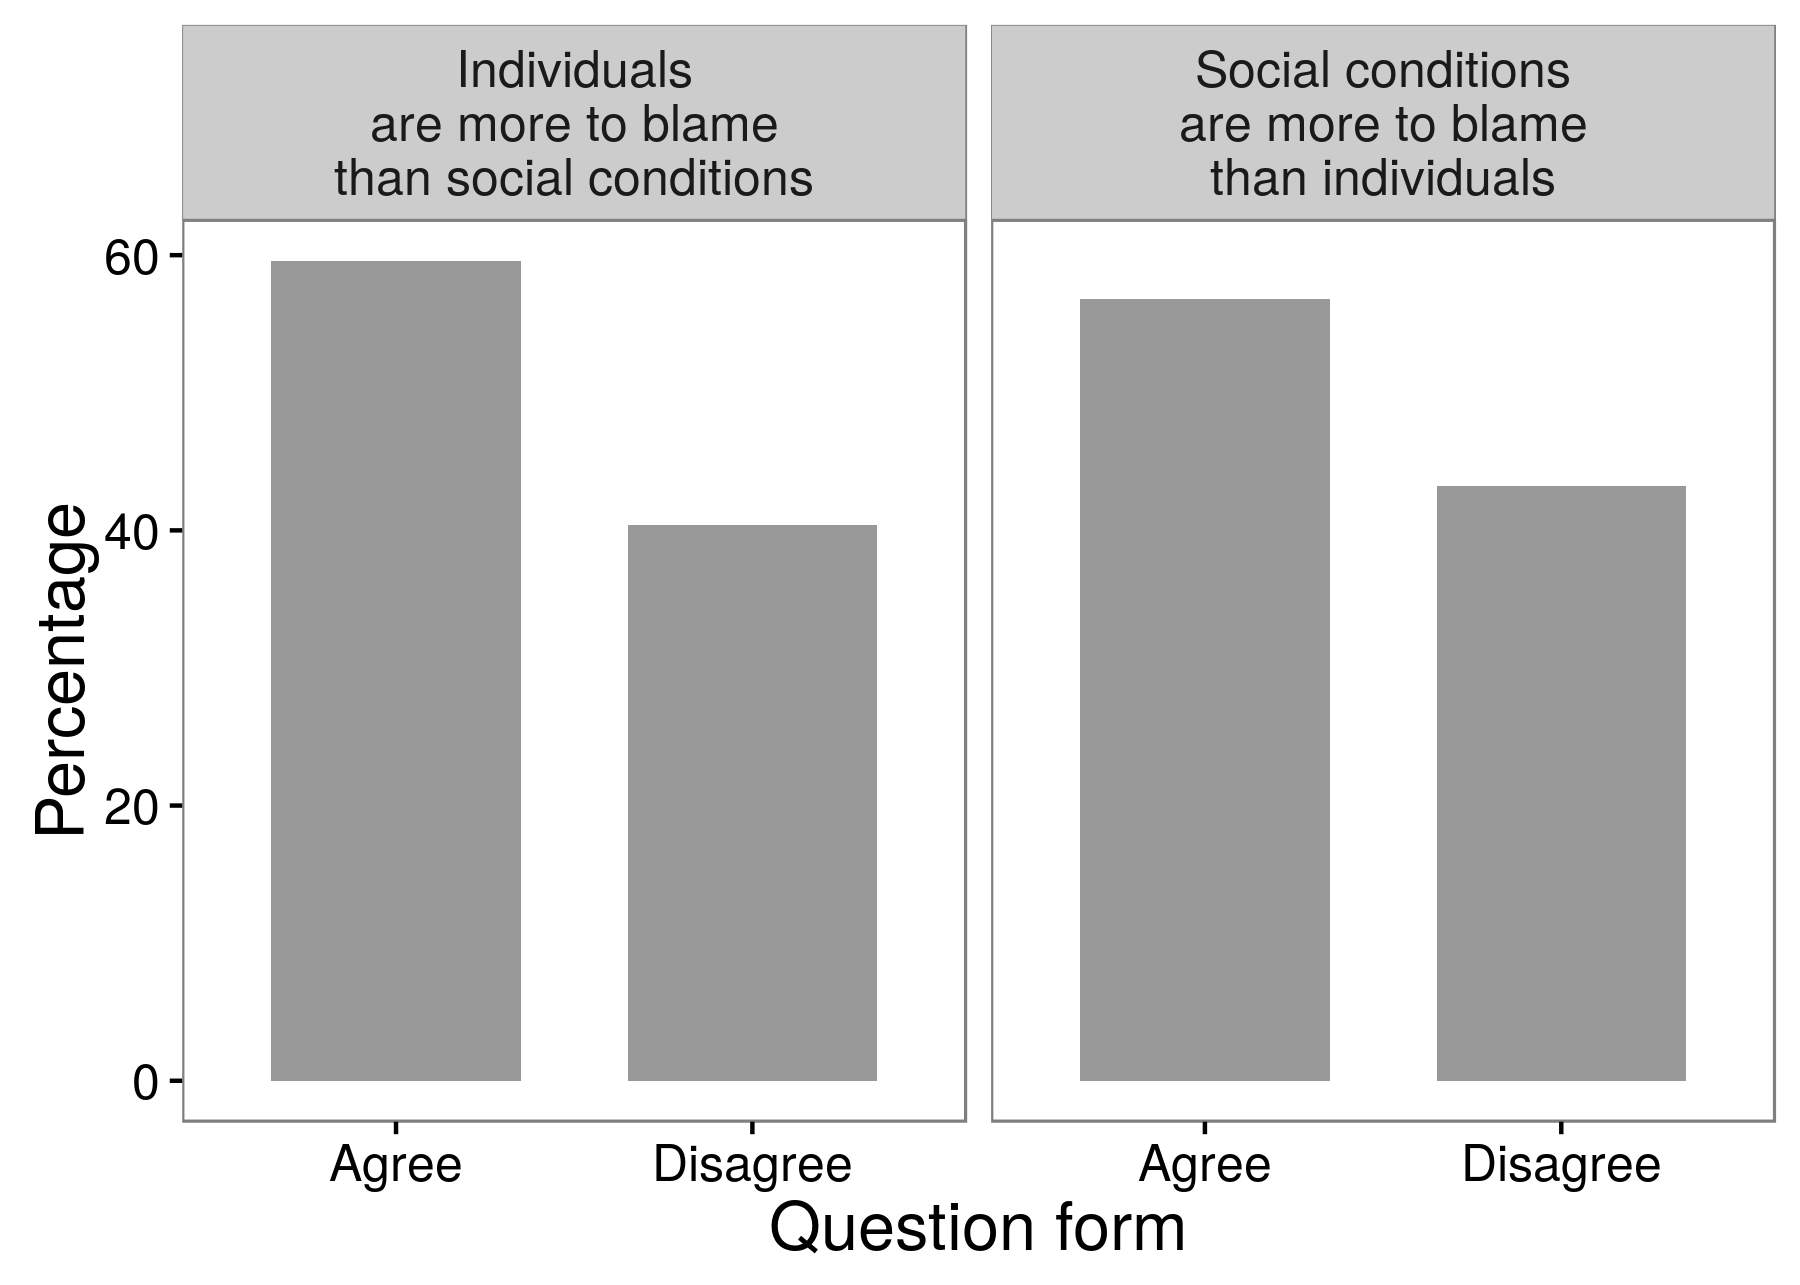 Գծապատկեր 3.3: Հետազոտության արդյունքում ստացված հետազոտության արդյունքները, որոնք ցույց են տալիս, որ հետազոտողները կարող են տարբեր պատասխաններ ստանալ `կախված նրանից, թե ինչպես են նրանք հարցրել: Հարցվողների մեծամասնությունը համաձայնվել է, որ անհատները մեղավոր են, քան հանցավորության եւ անօրինականության սոցիալական պայմանները: Իսկ հարցվողների մեծամասնությունը համաձայնեց հակառակը. Սոցիալական պայմանները ավելի պատասխանատու են, քան անհատները: Համատեղելի Schuman եւ Presser (1996), աղյուսակ 8.1: